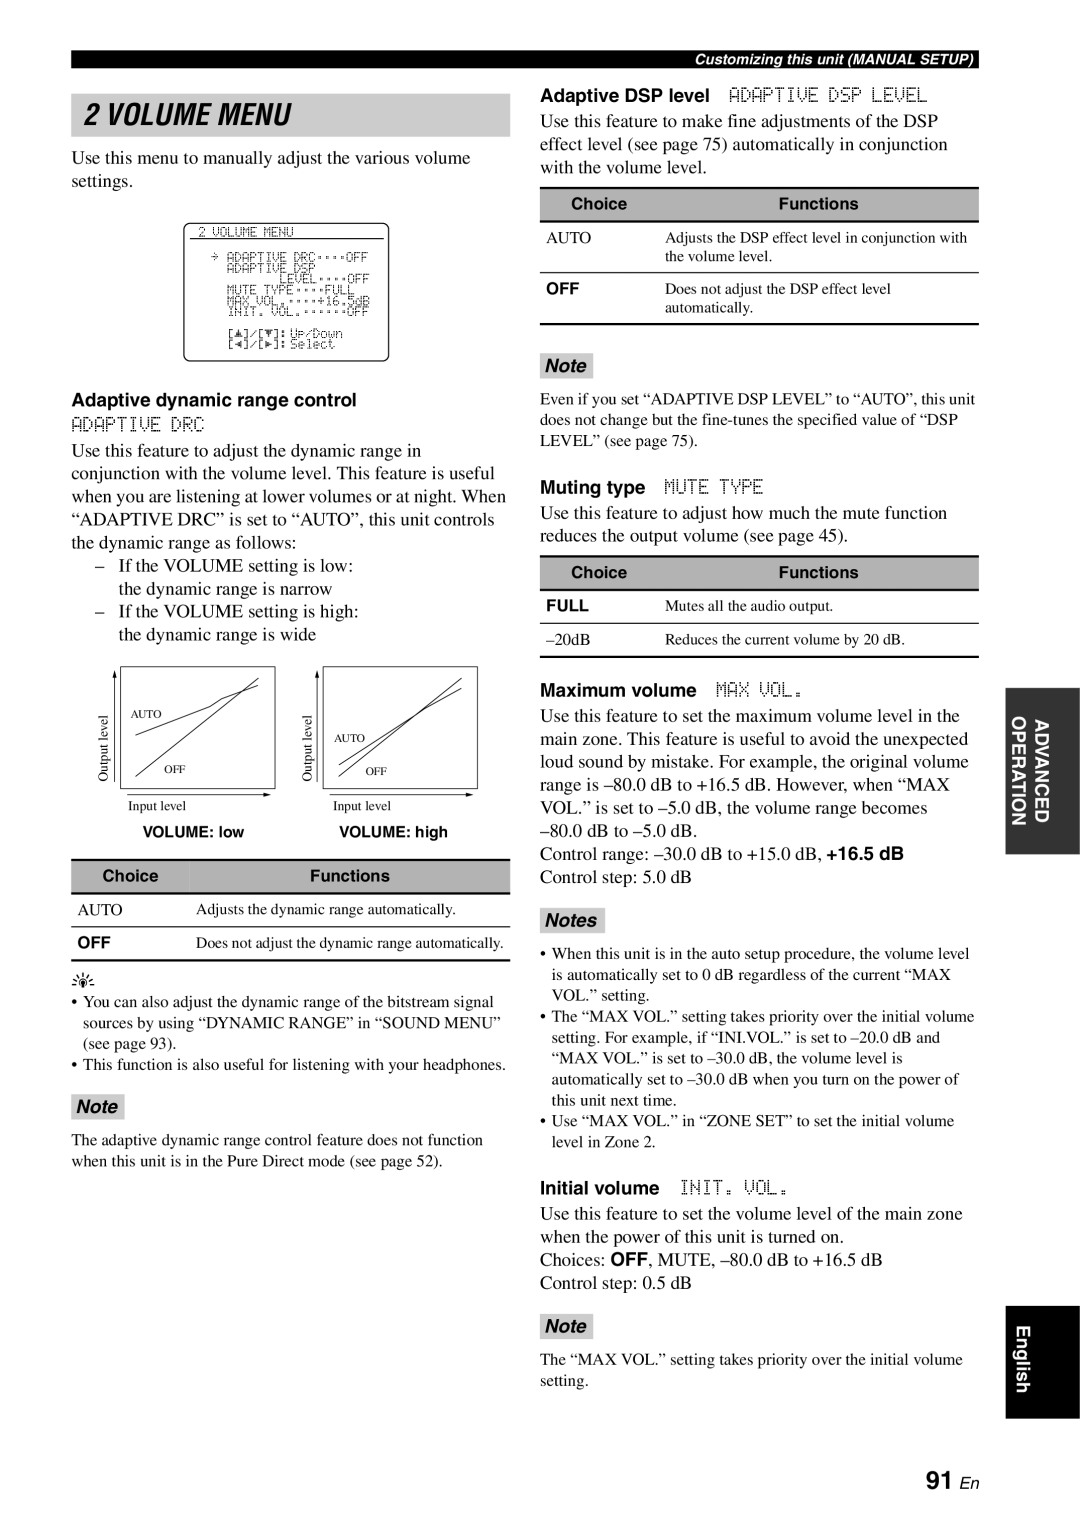 Yamaha RX-V863 owner manual Volume Menu, 91 En, Notes 